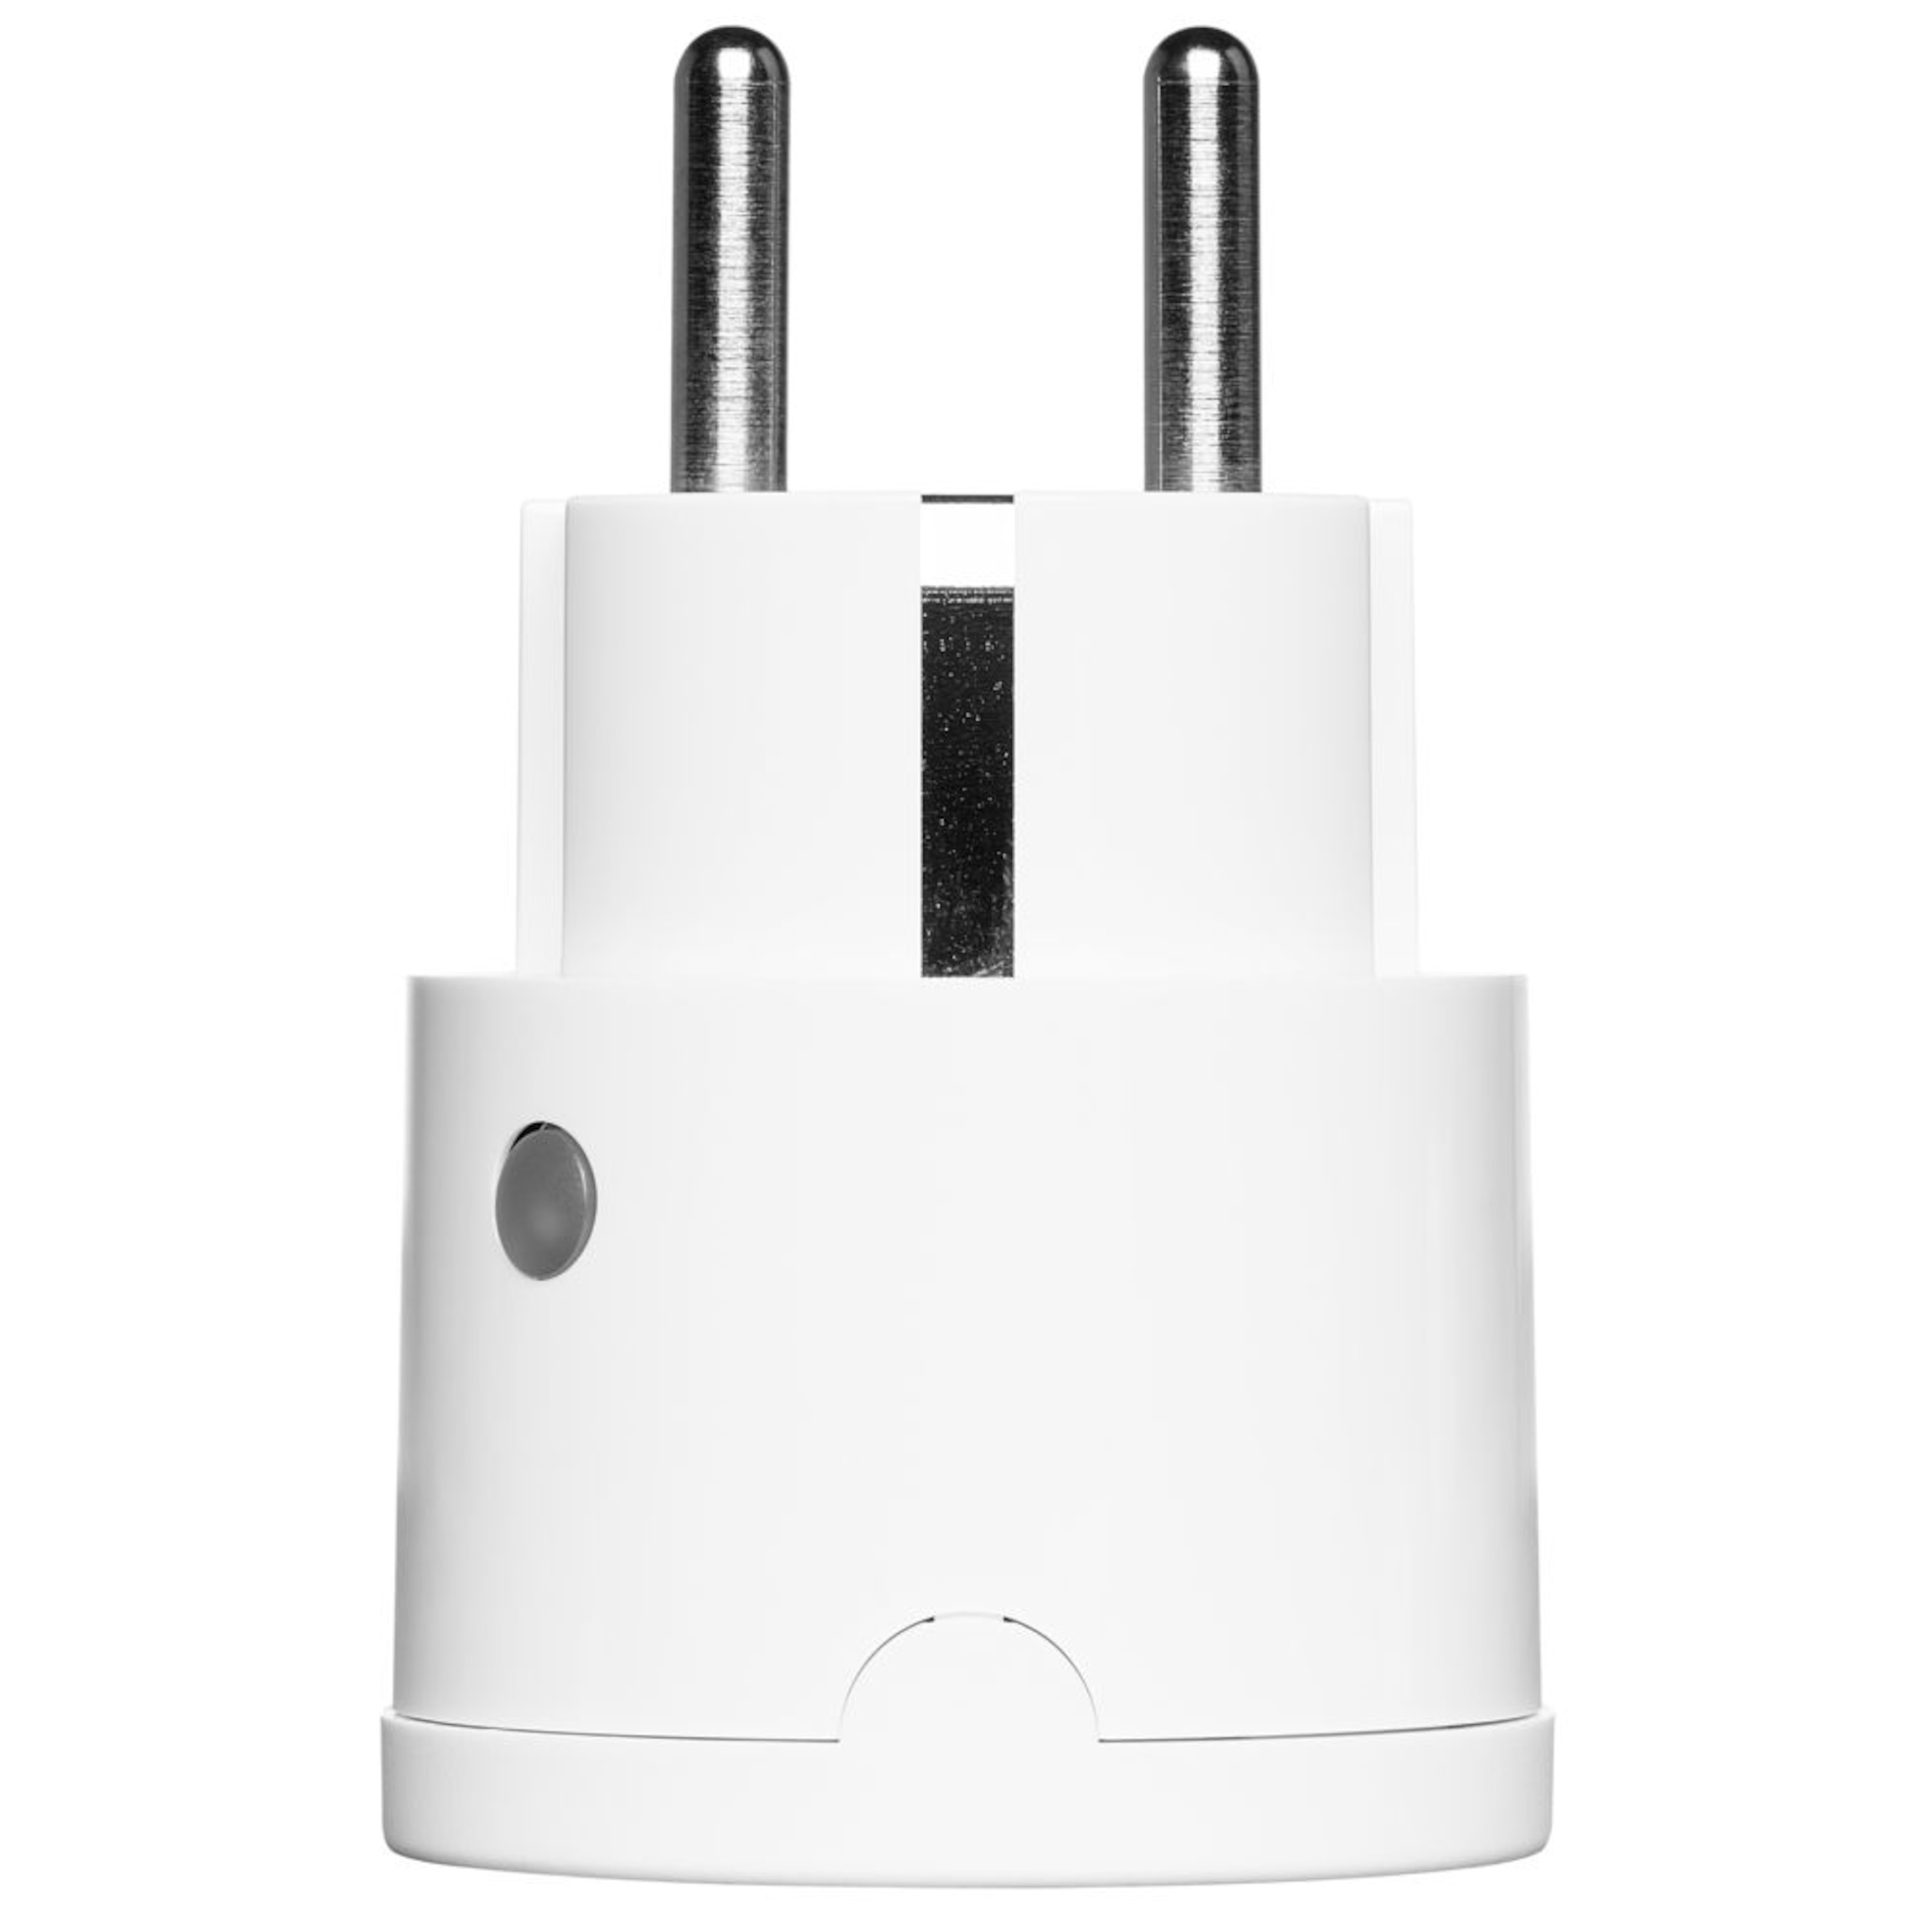 MEDION® Smart Home Zwischenstecker P85702, schaltet elektrische Geräte, misst Stromverbrauch, Zeitschaltung oder manuelle Schaltung, innogy SmartHome kompatibel